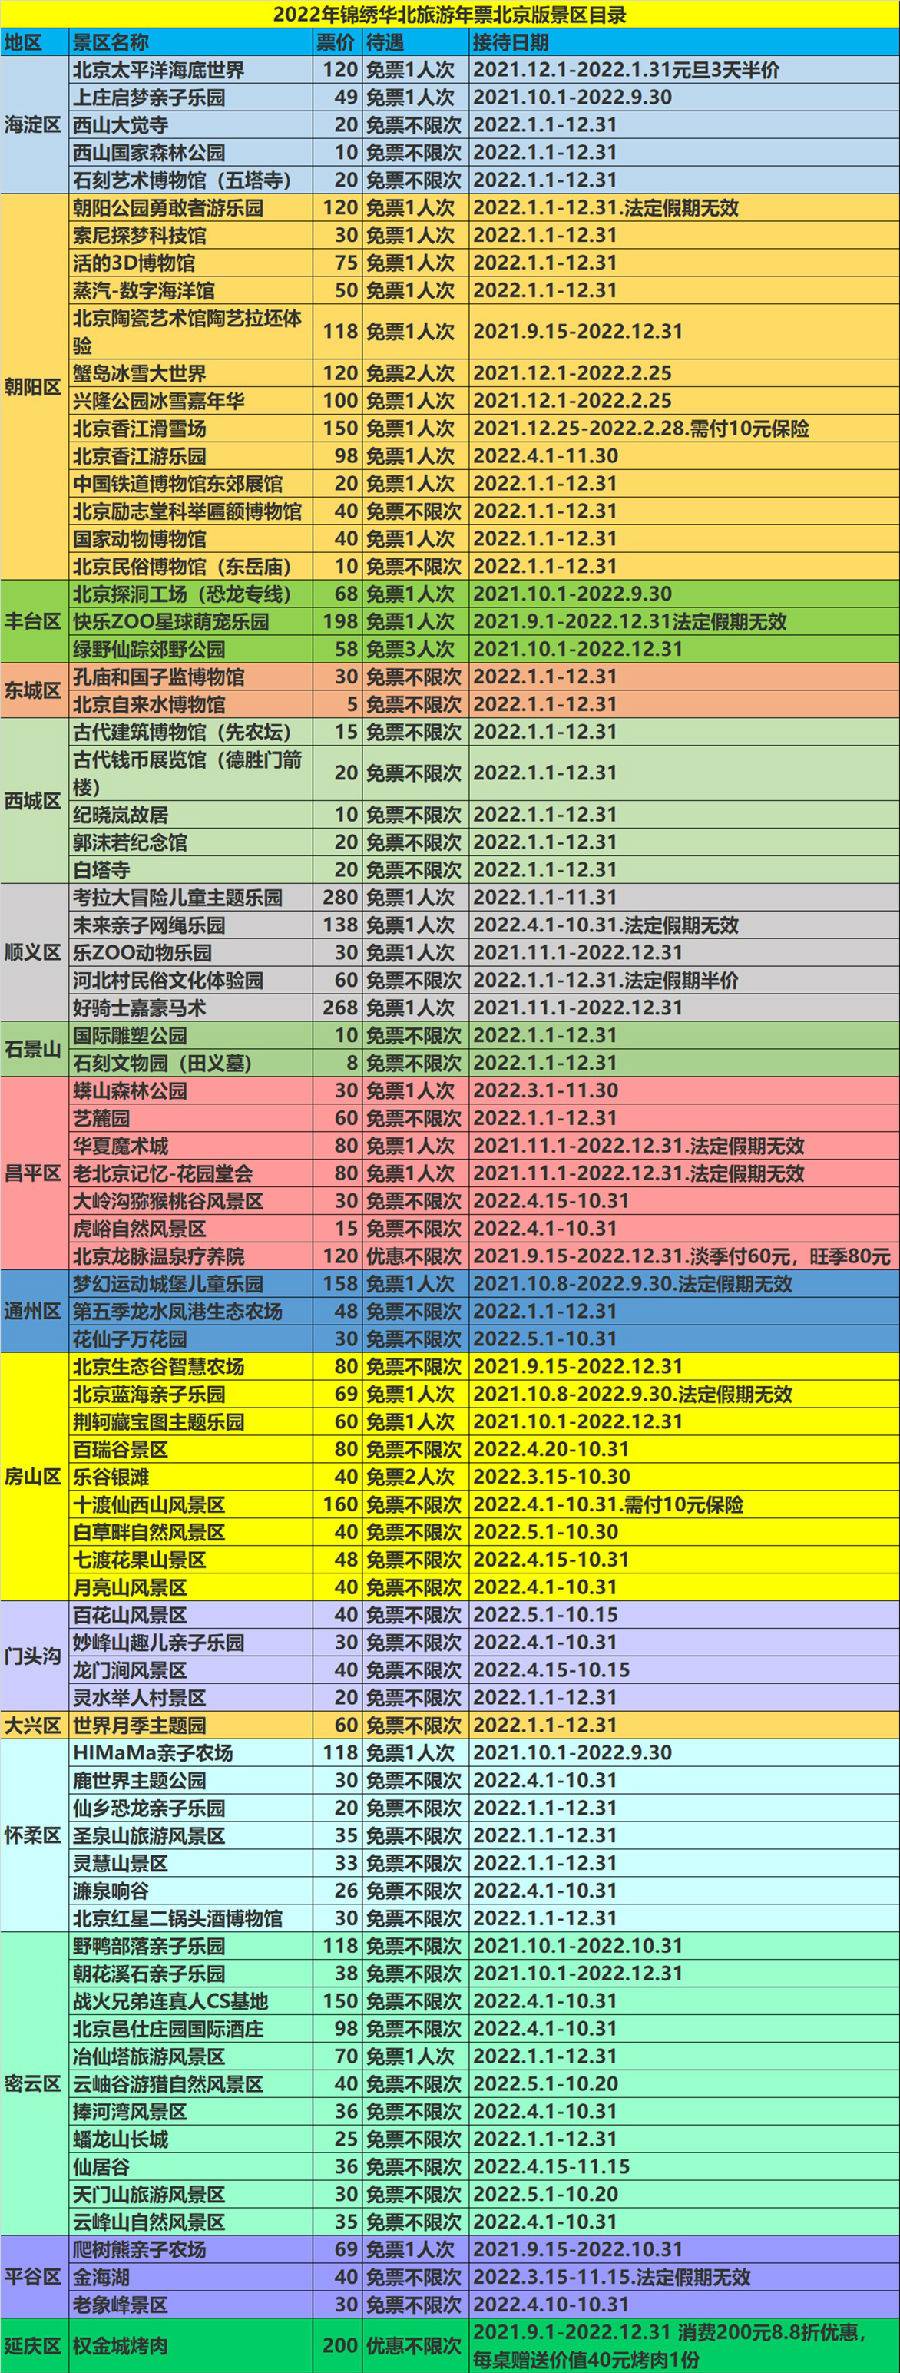 2024锦绣华北联合旅游年票北京版价格、包含景点、办理入口